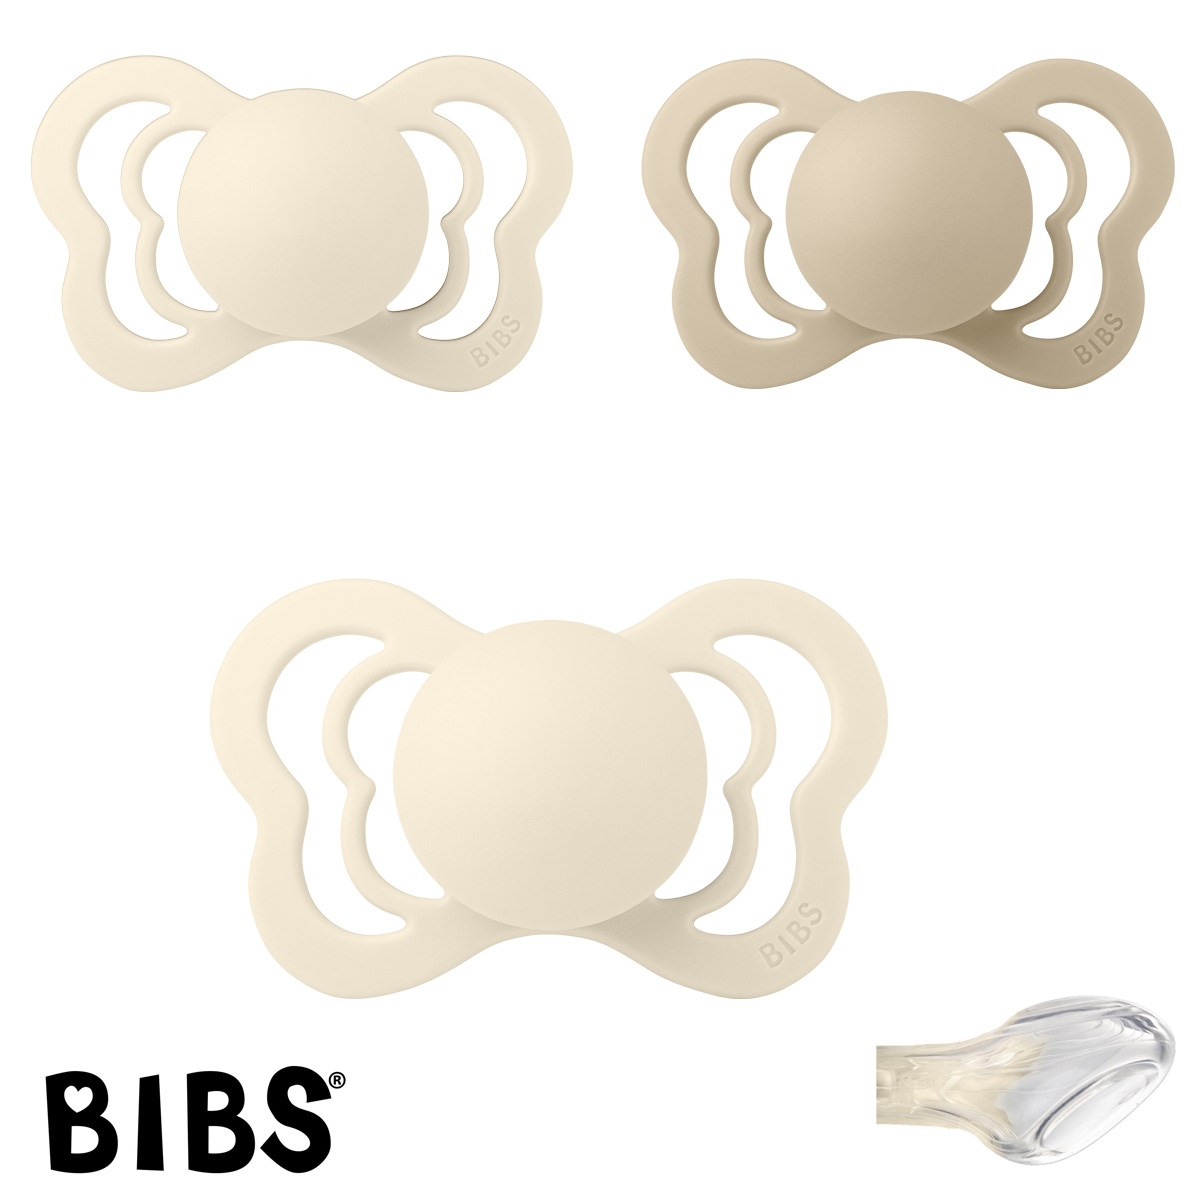 BIBS Couture Sutter med navn str2, 2 Ivory, 1 Vanilla, Anatomisk Silikone, Pakke med 3 sutter